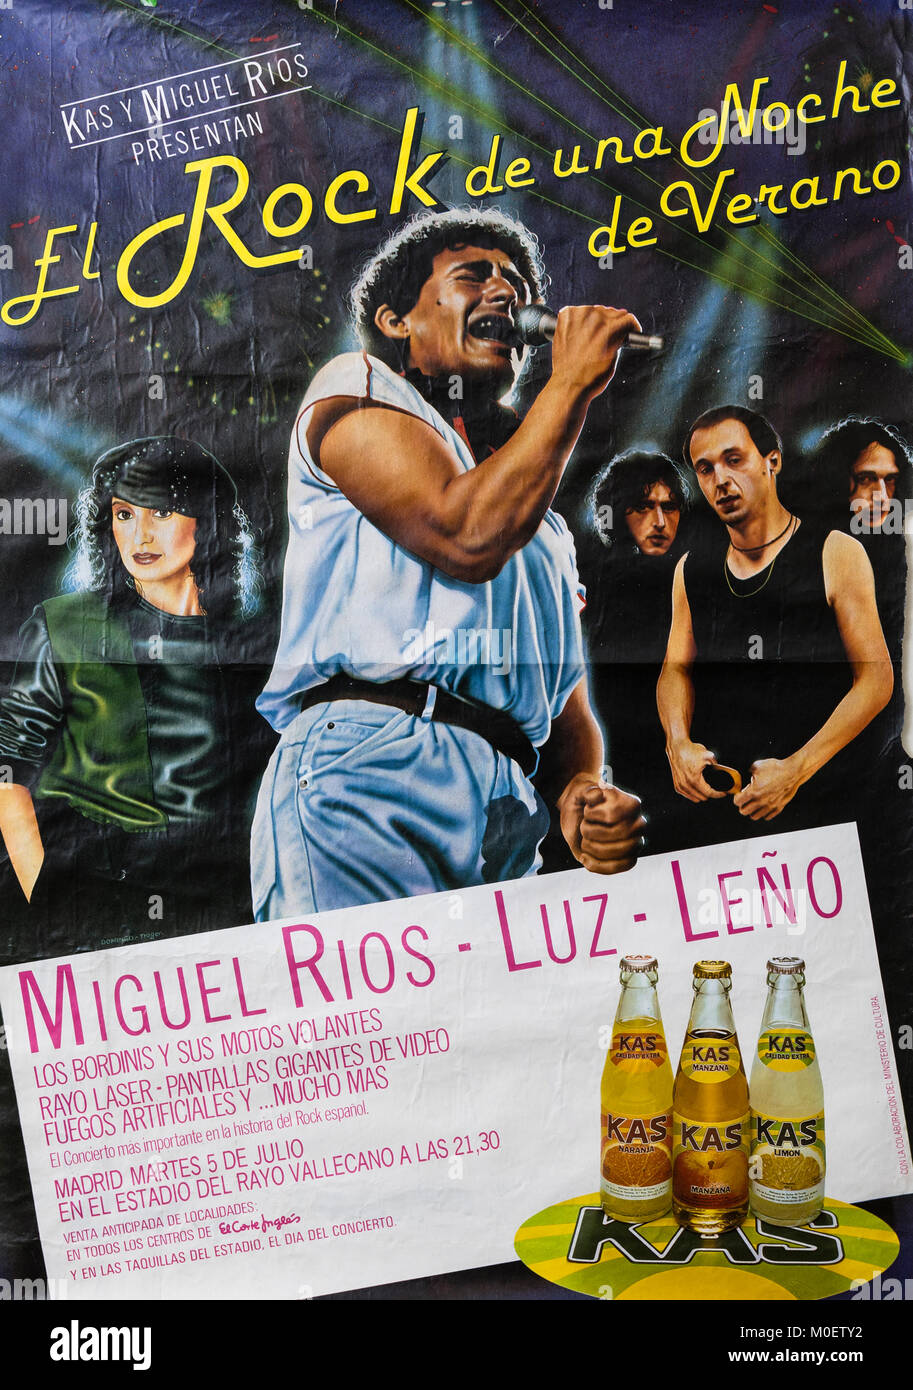 Miguel Rios, Luz e Leño in El Rock de una noche de verano, Madrid Luglio 1983. Concerto musicale poster Foto Stock